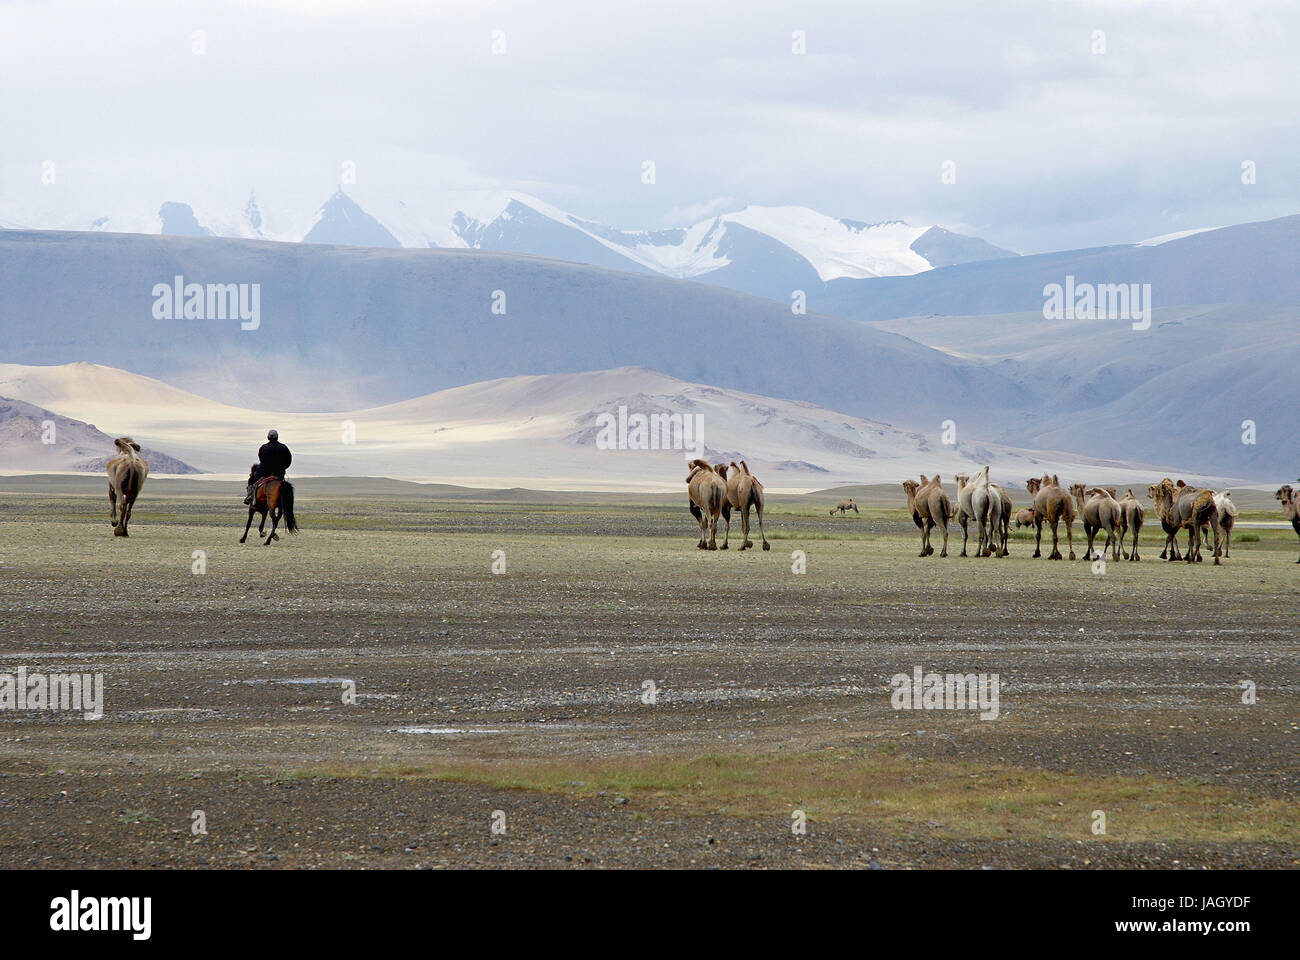 Mongolia,extreme west province,Bayan Olgii province,Tsambagarav national park,camels,bleeds, Stock Photo